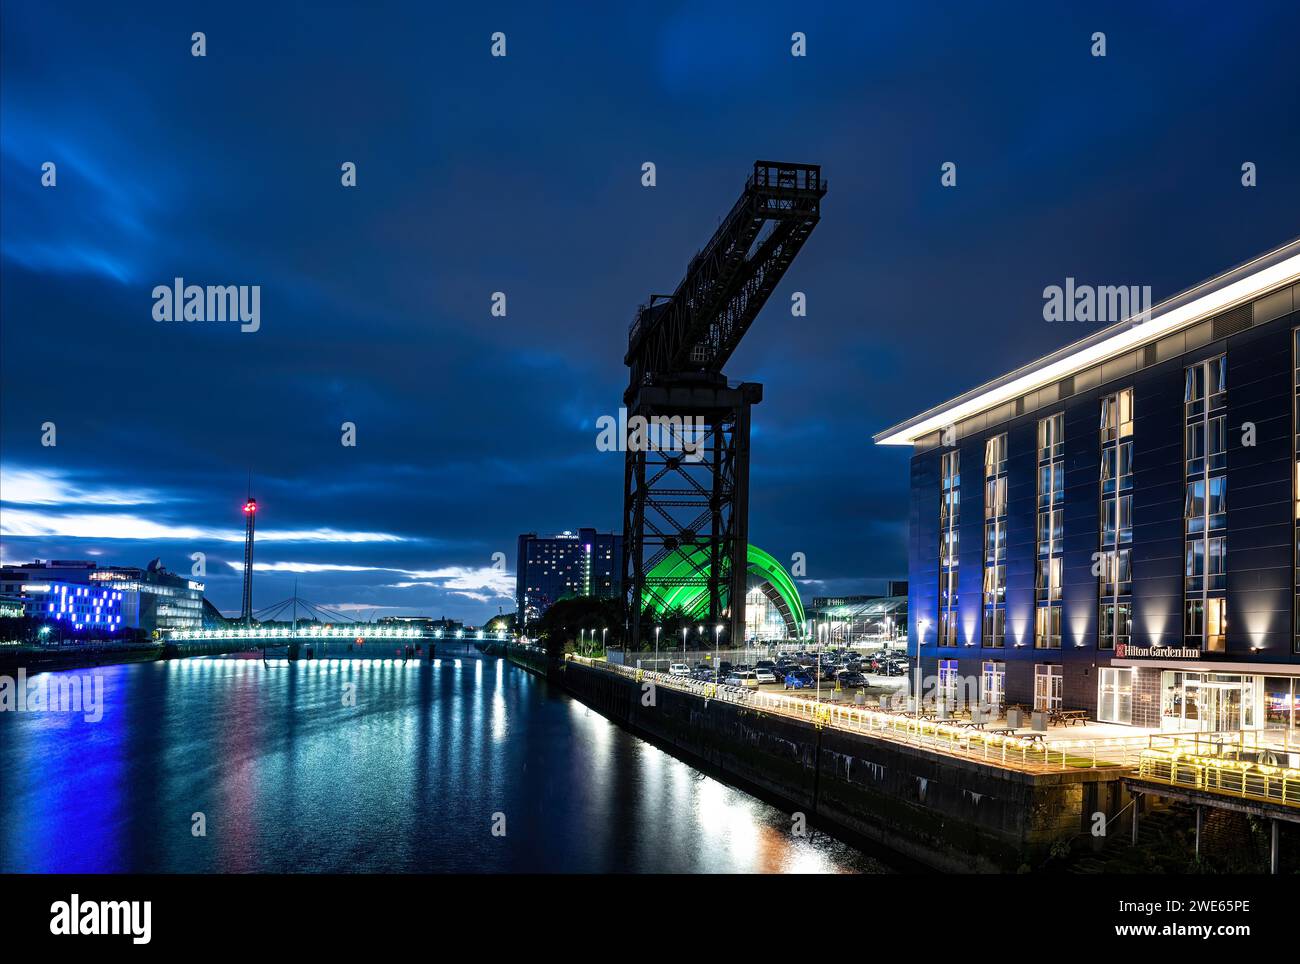 Vue sur la rivière Clyde, Glasgow, au crépuscule montrant Finnieston Crane, Hôtels etc Banque D'Images